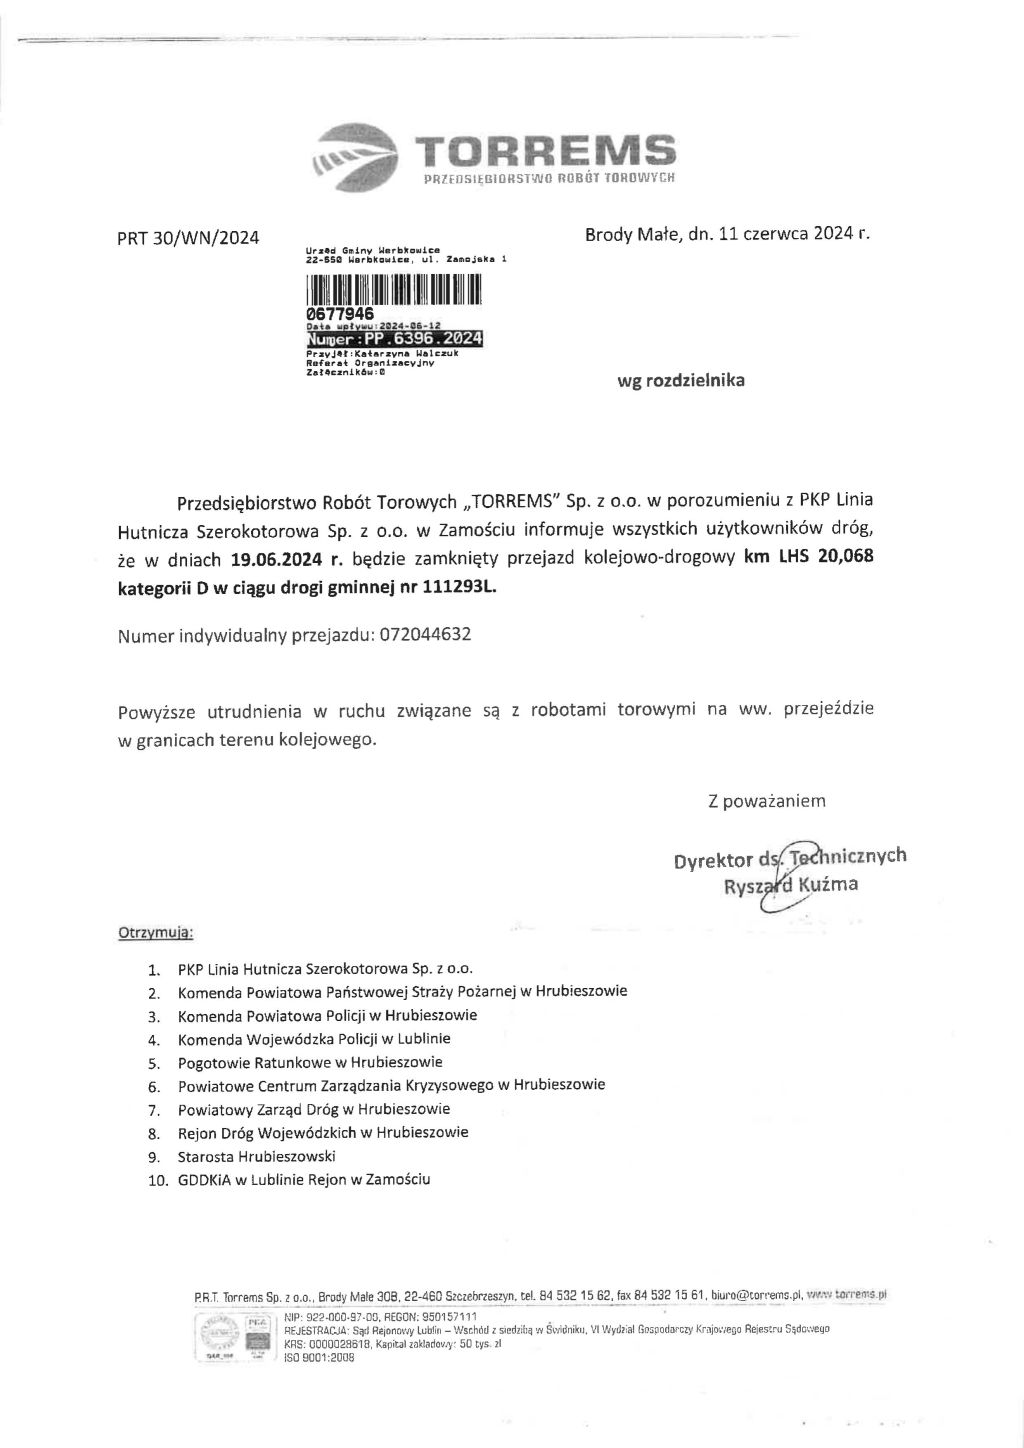 Informacja o zamknięciu przejazdu kolejowo-drogowego LHS w dniu 19.06.2024 r.